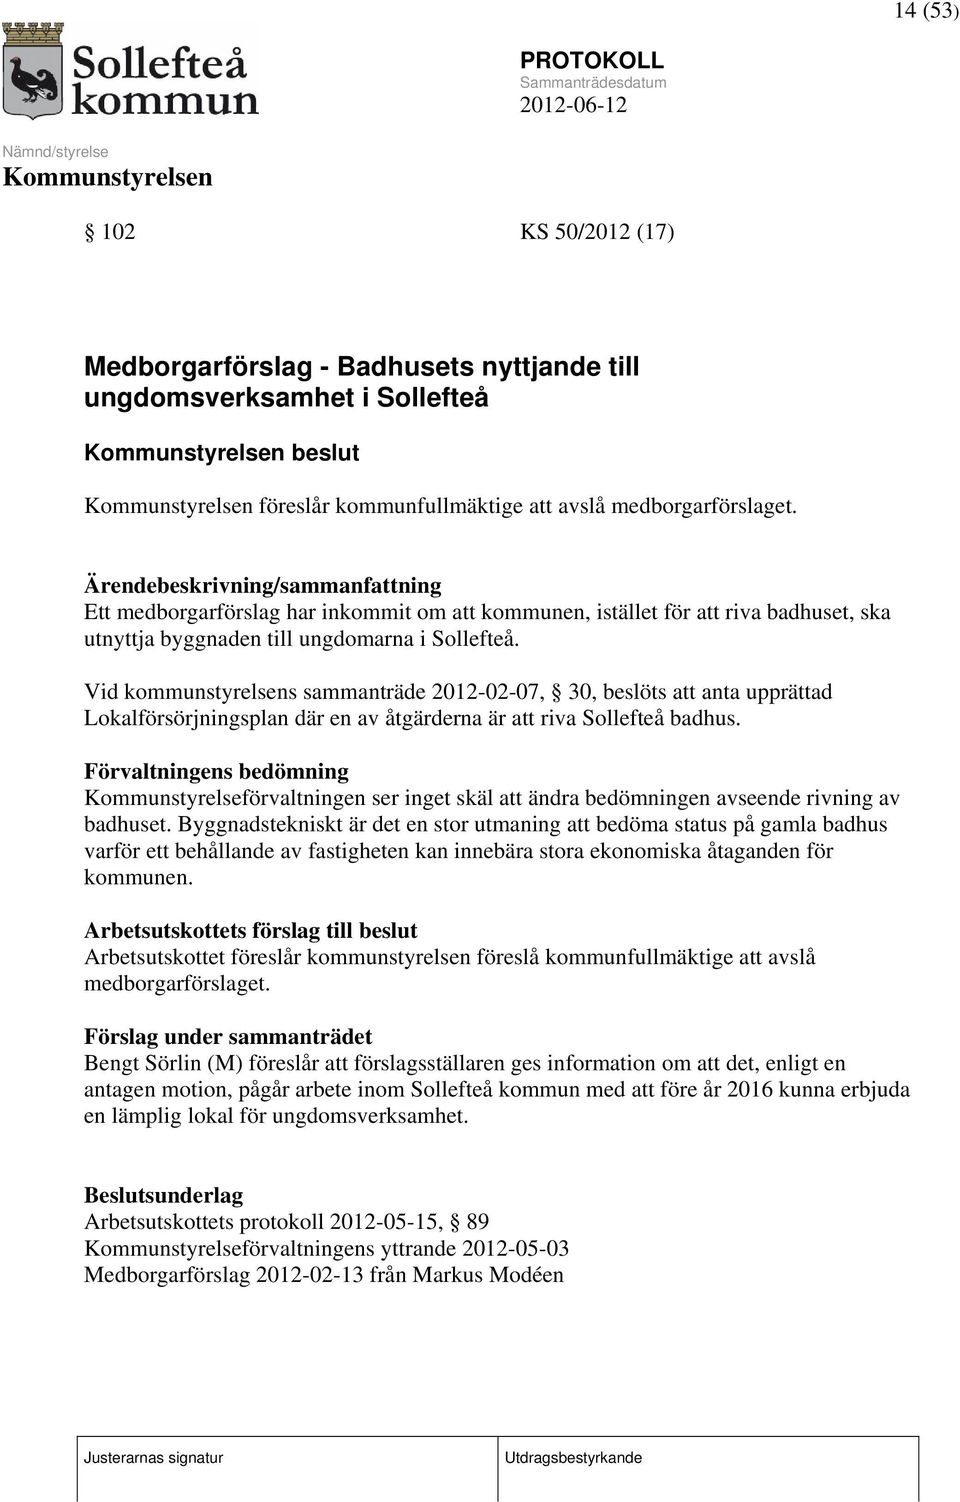 Vid kommunstyrelsens sammanträde 2012-02-07, 30, beslöts att anta upprättad Lokalförsörjningsplan där en av åtgärderna är att riva Sollefteå badhus.